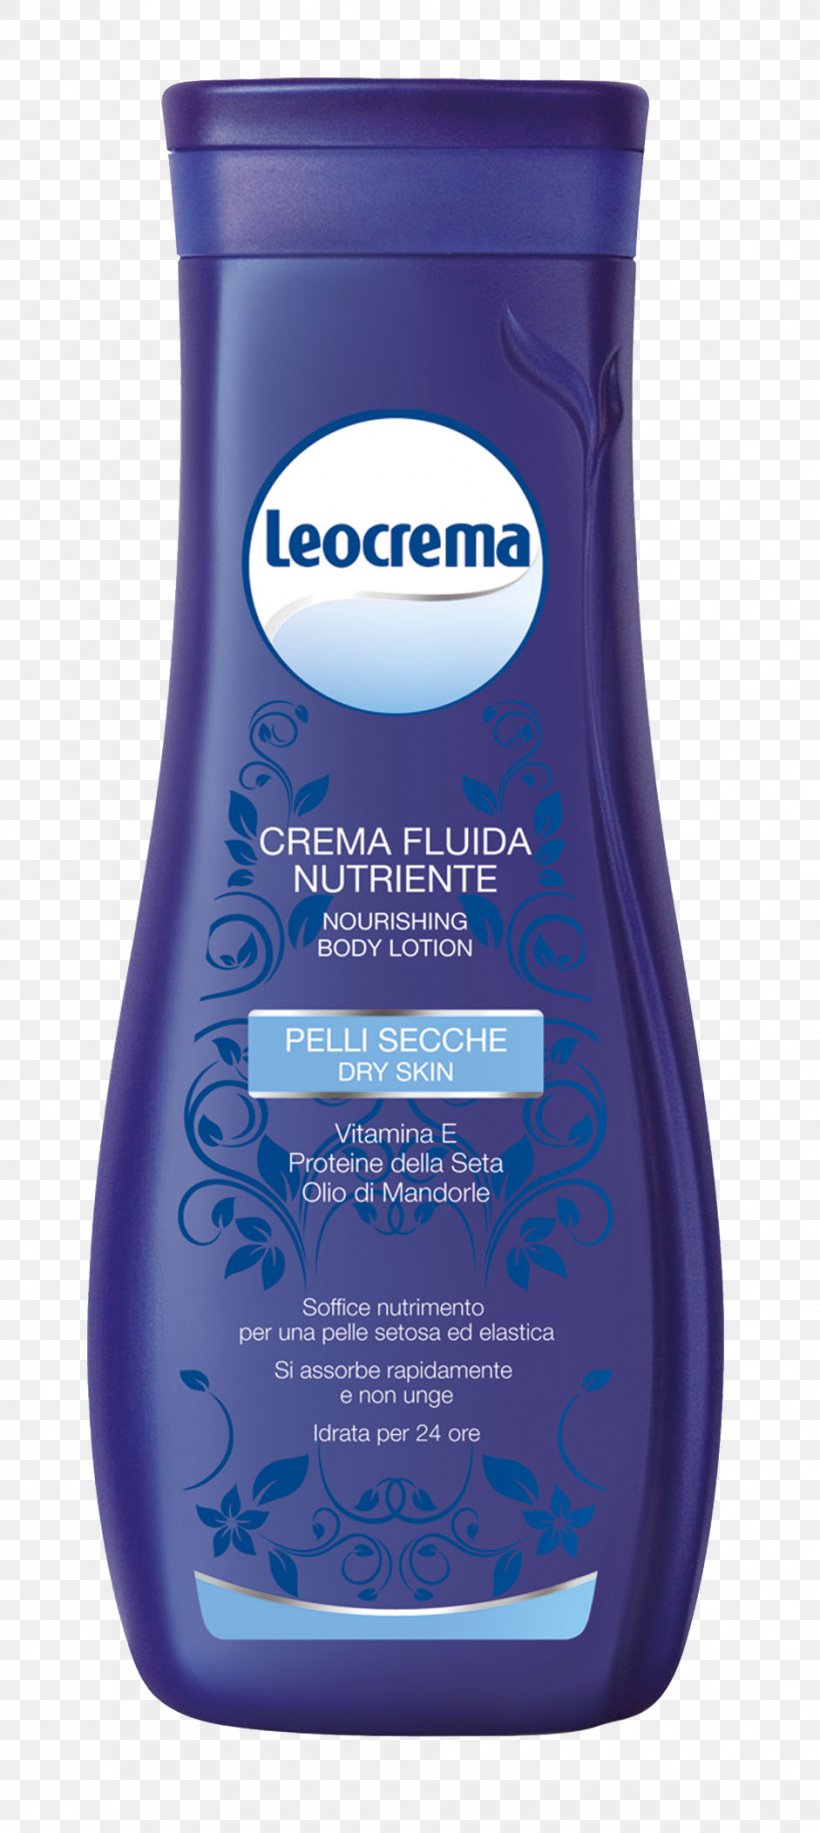 Lotion Leocrema Sotto La Doccia Crema Corpo Nutriente, PNG, 941x2104px, Lotion, Cream, Liquid, Shower, Skin Care Download Free